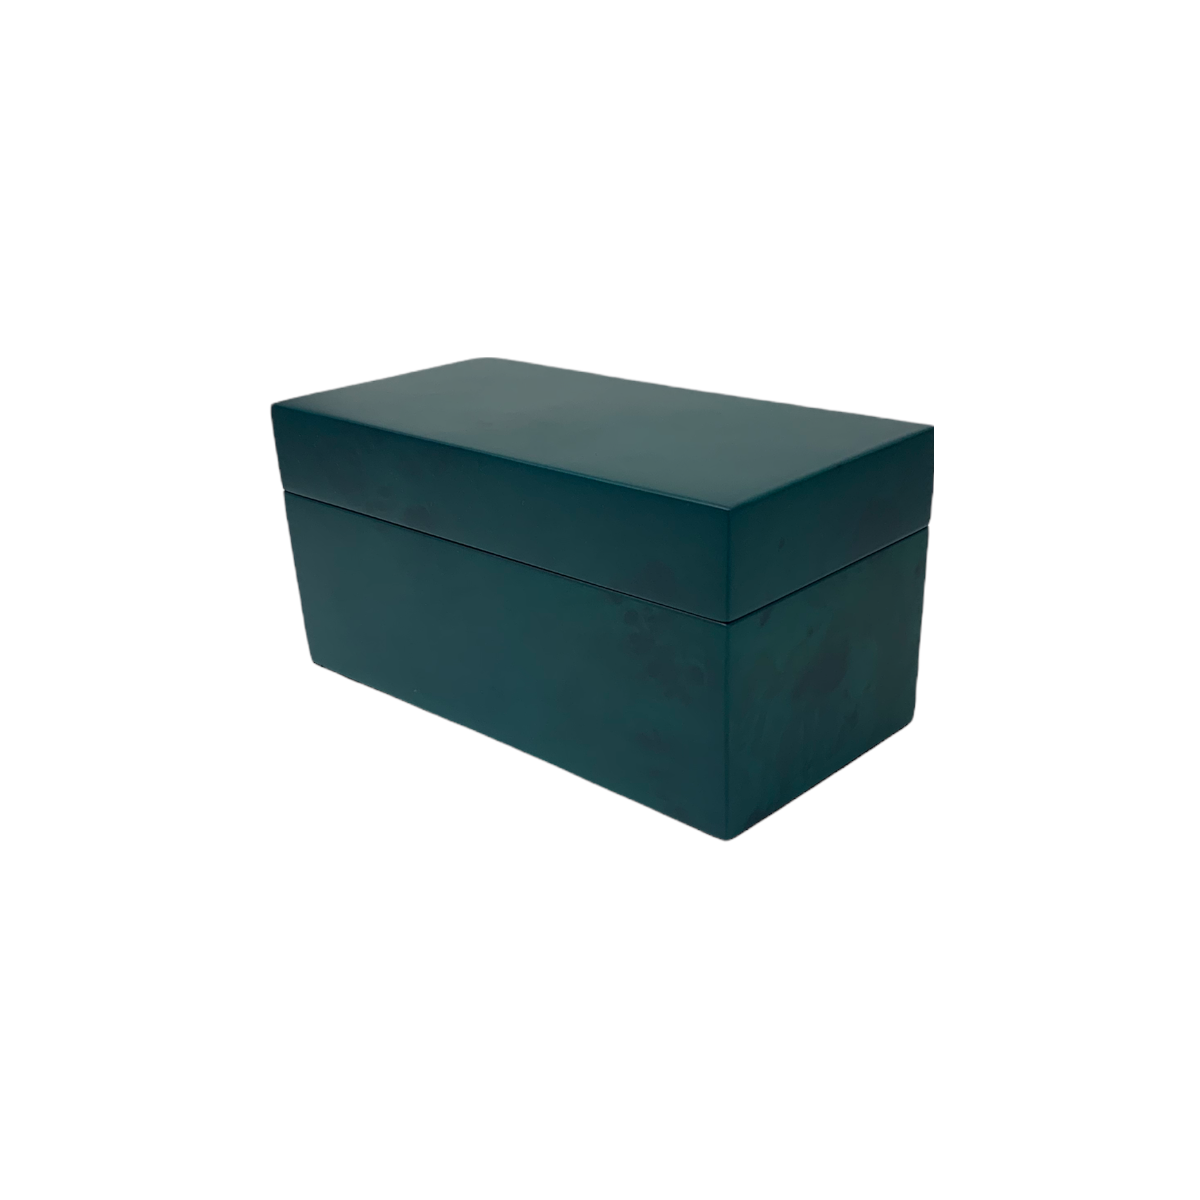 green wooden box